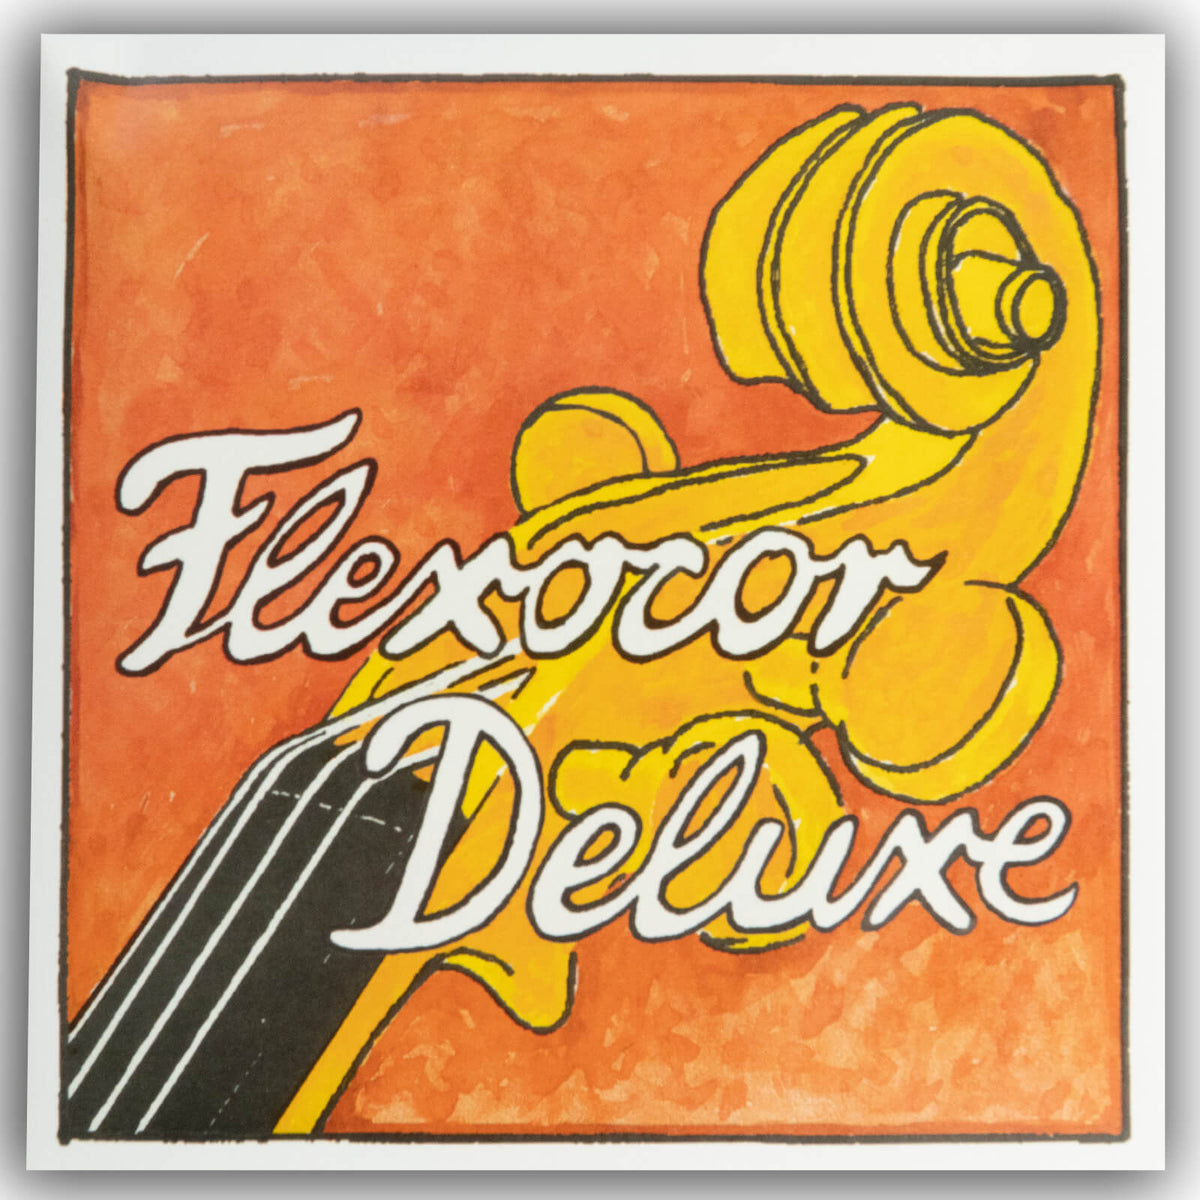 Pirastro Flexocore Deluxe Cello String Set